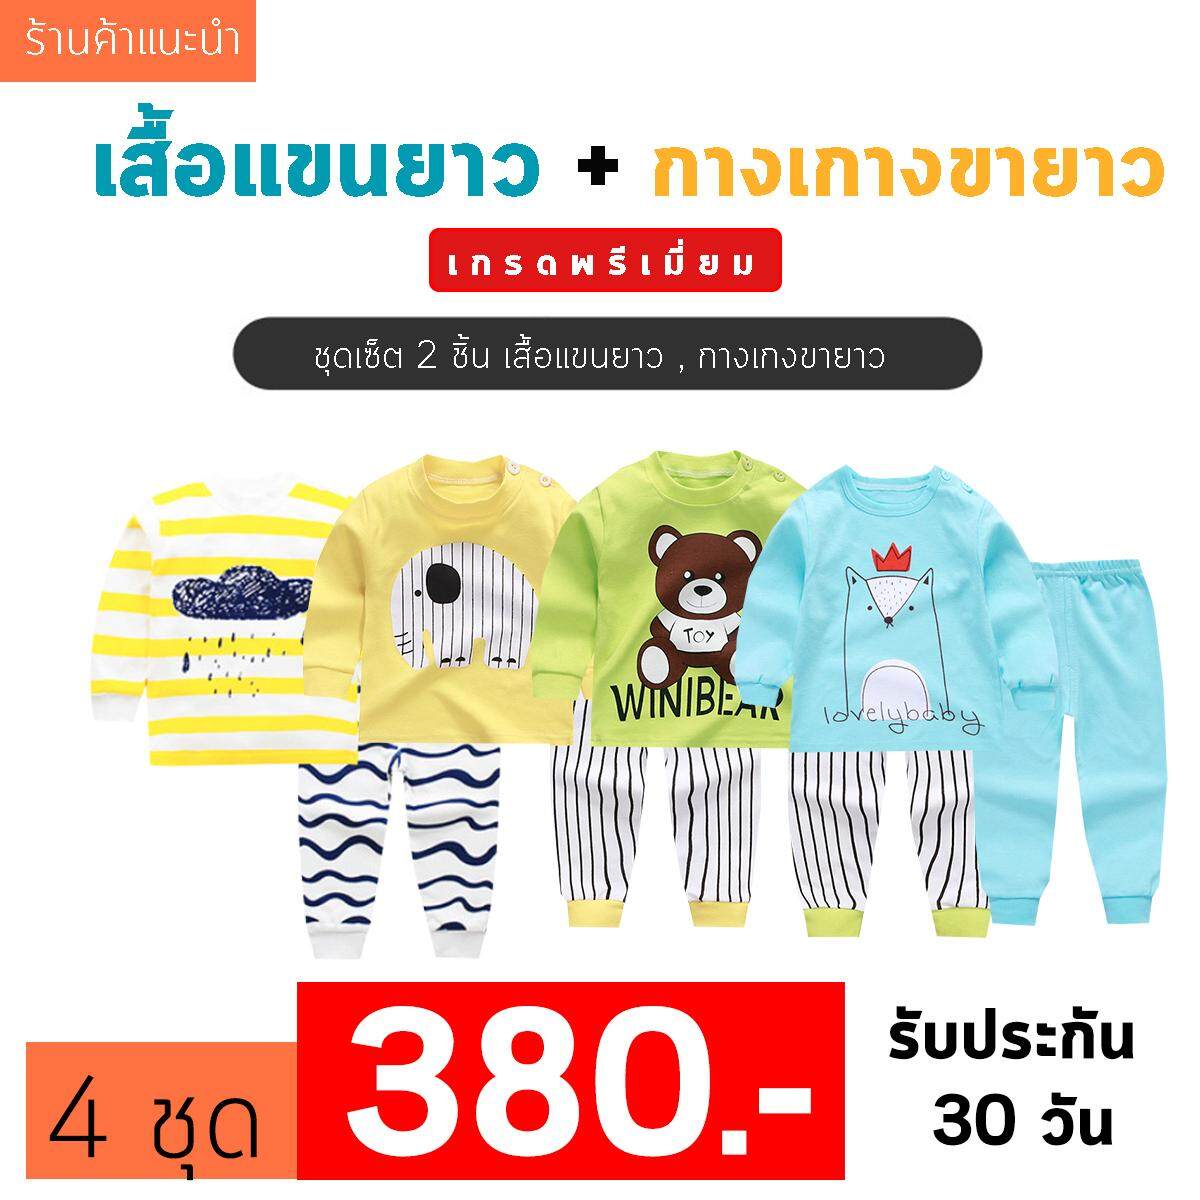 แนะนำ ❤️Baby Thailand ชุดเสื้อผ้าเด็ก ชุดนอน เด็ก ชุดเสื้อผ้าเด็ก ชุดนอน เด็ก [เซ็ต2ชิ้น] [ เสื้อแขนยาว + กางเกงขายาว ]ใส่สบายเนื้อผ้า Cotton ราคาพิเศษ ไซส์ 80 -120cm/ 6เดือน-5ปี ชุดนอนเด็ก ผ้านิ่ม เนื้อผ้า